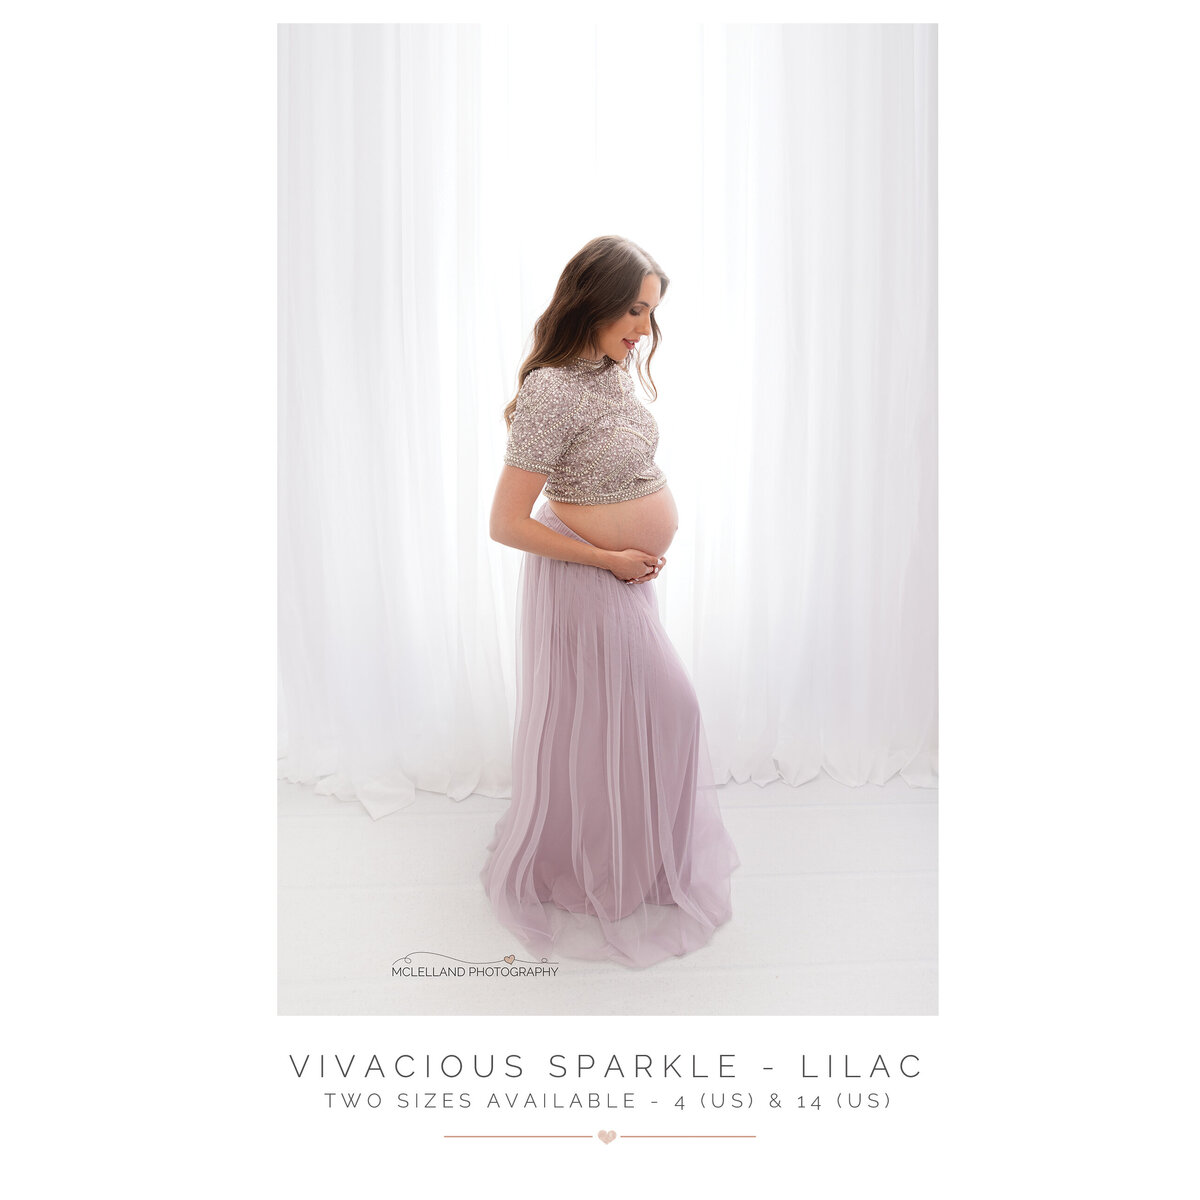 Vivacious Sparkle - Lilac